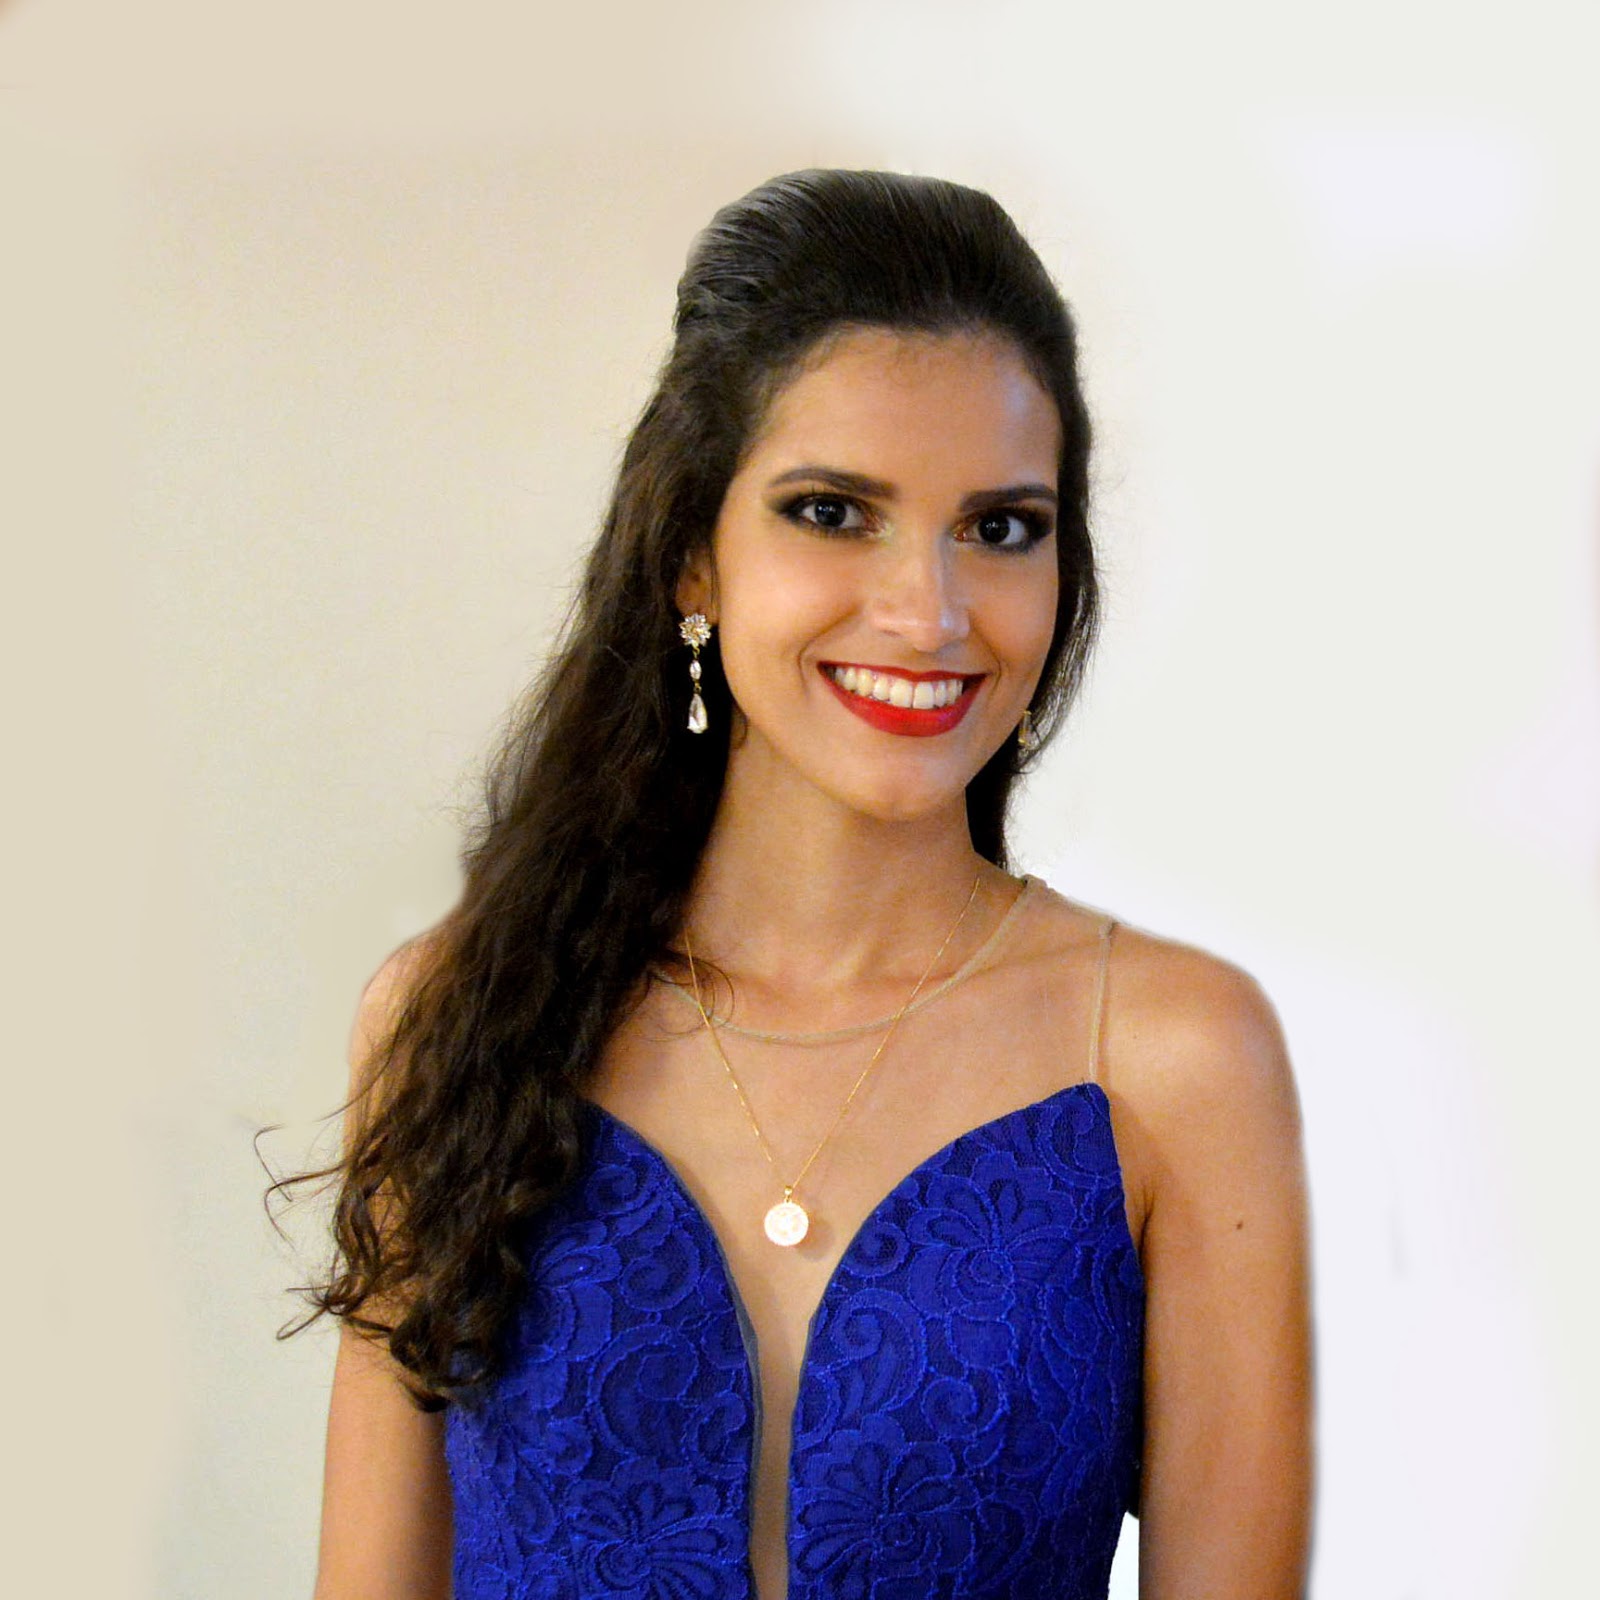 Minha formatura: vestido, penteado e maquiagem | Blog de Lorena Mota